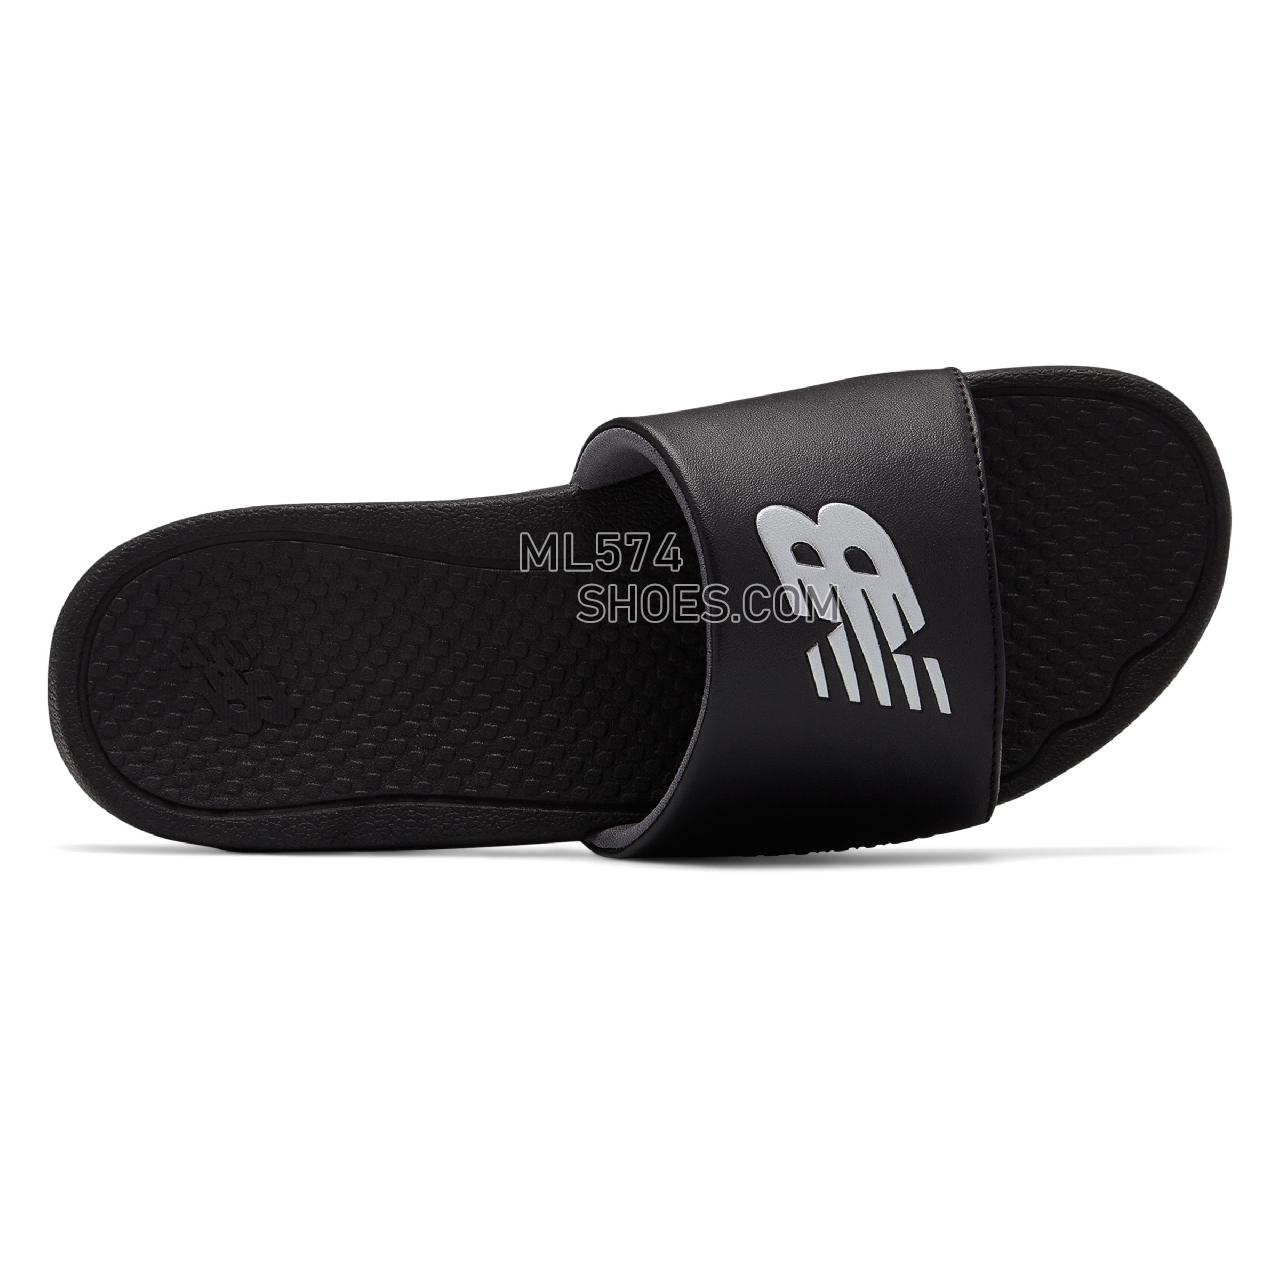 New Balance NB Pro Slide - Men's 3068 - Sandals Black with White - M3068BK